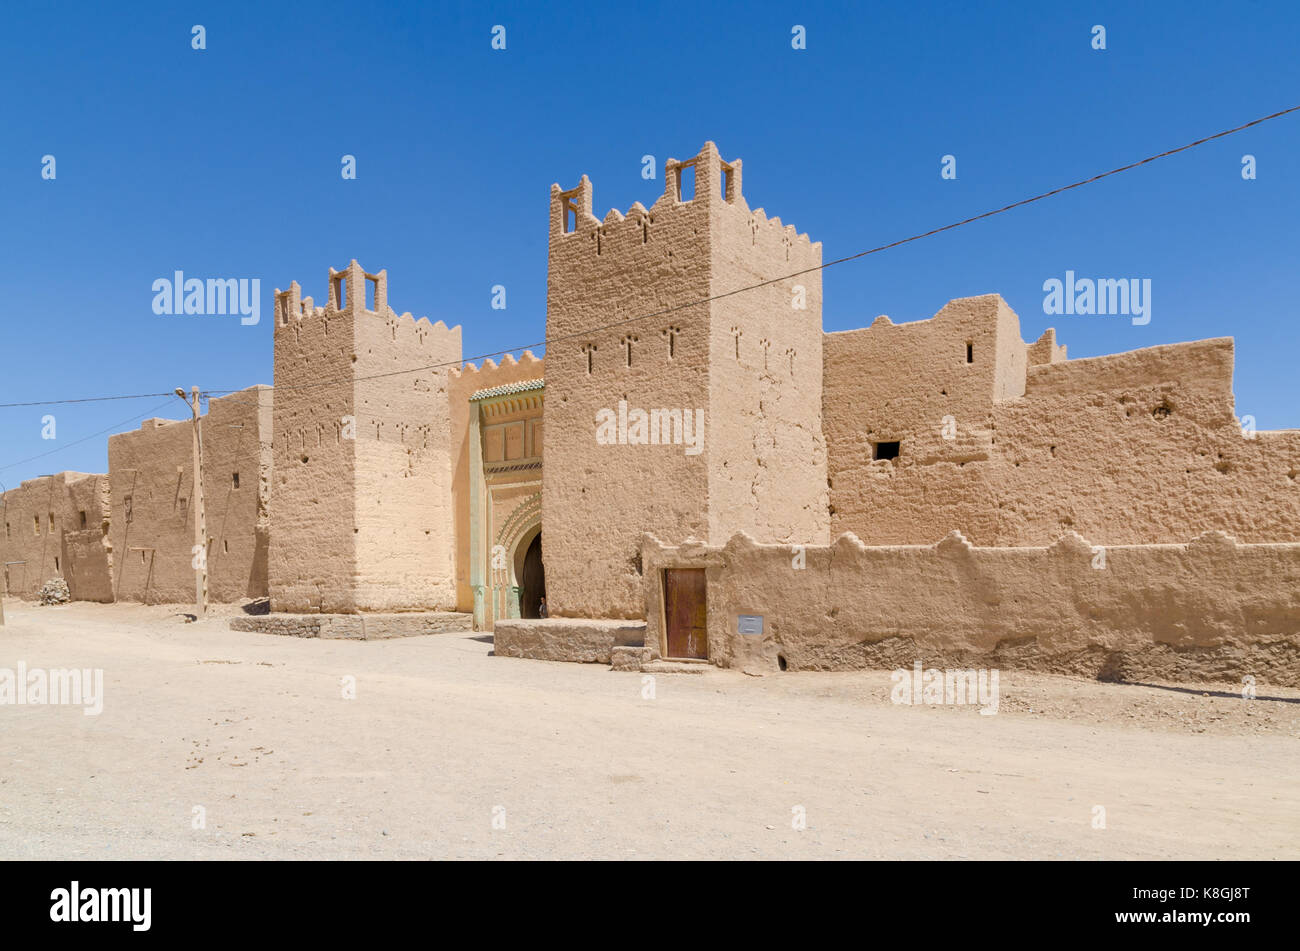 Belle vieille glaise bâtiment appelé une kasbah dans le désert du Maroc, l'Afrique du Nord. Banque D'Images